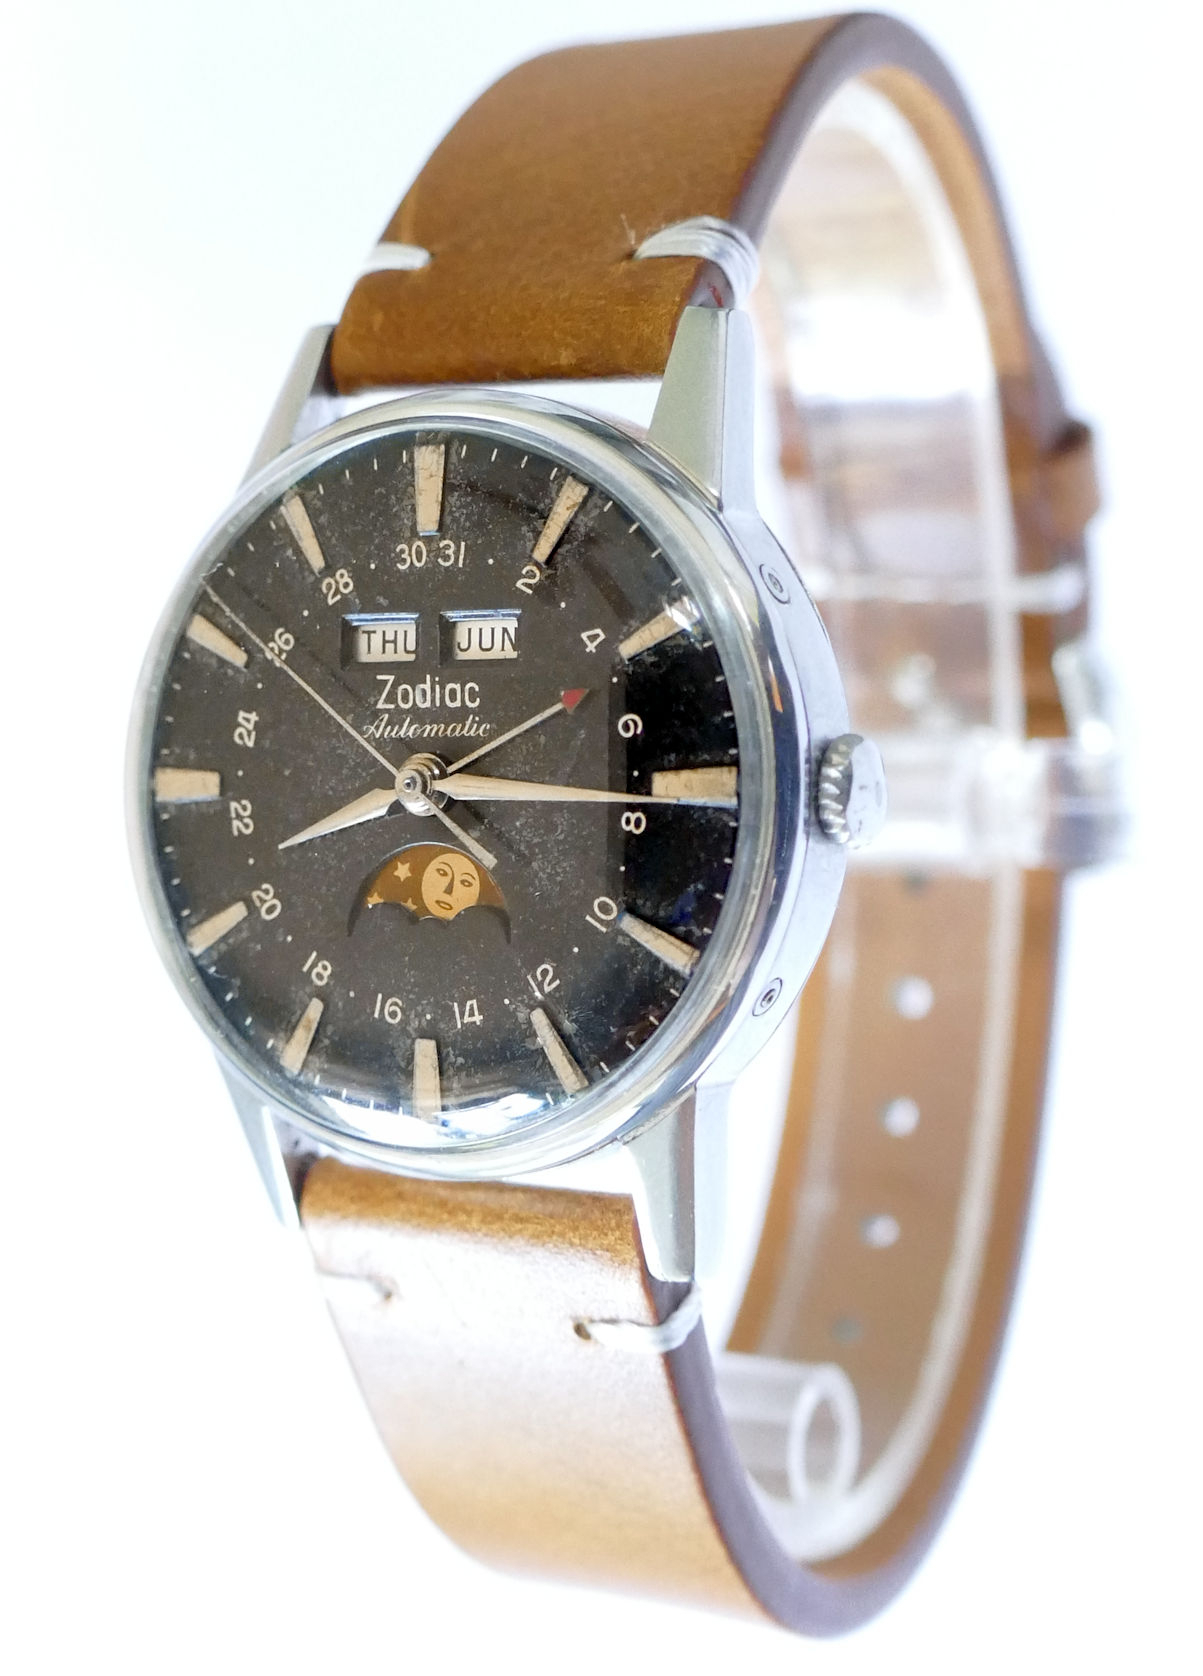 Zodiac Triple Date Moonphase Automatic Steel Watch 742-908